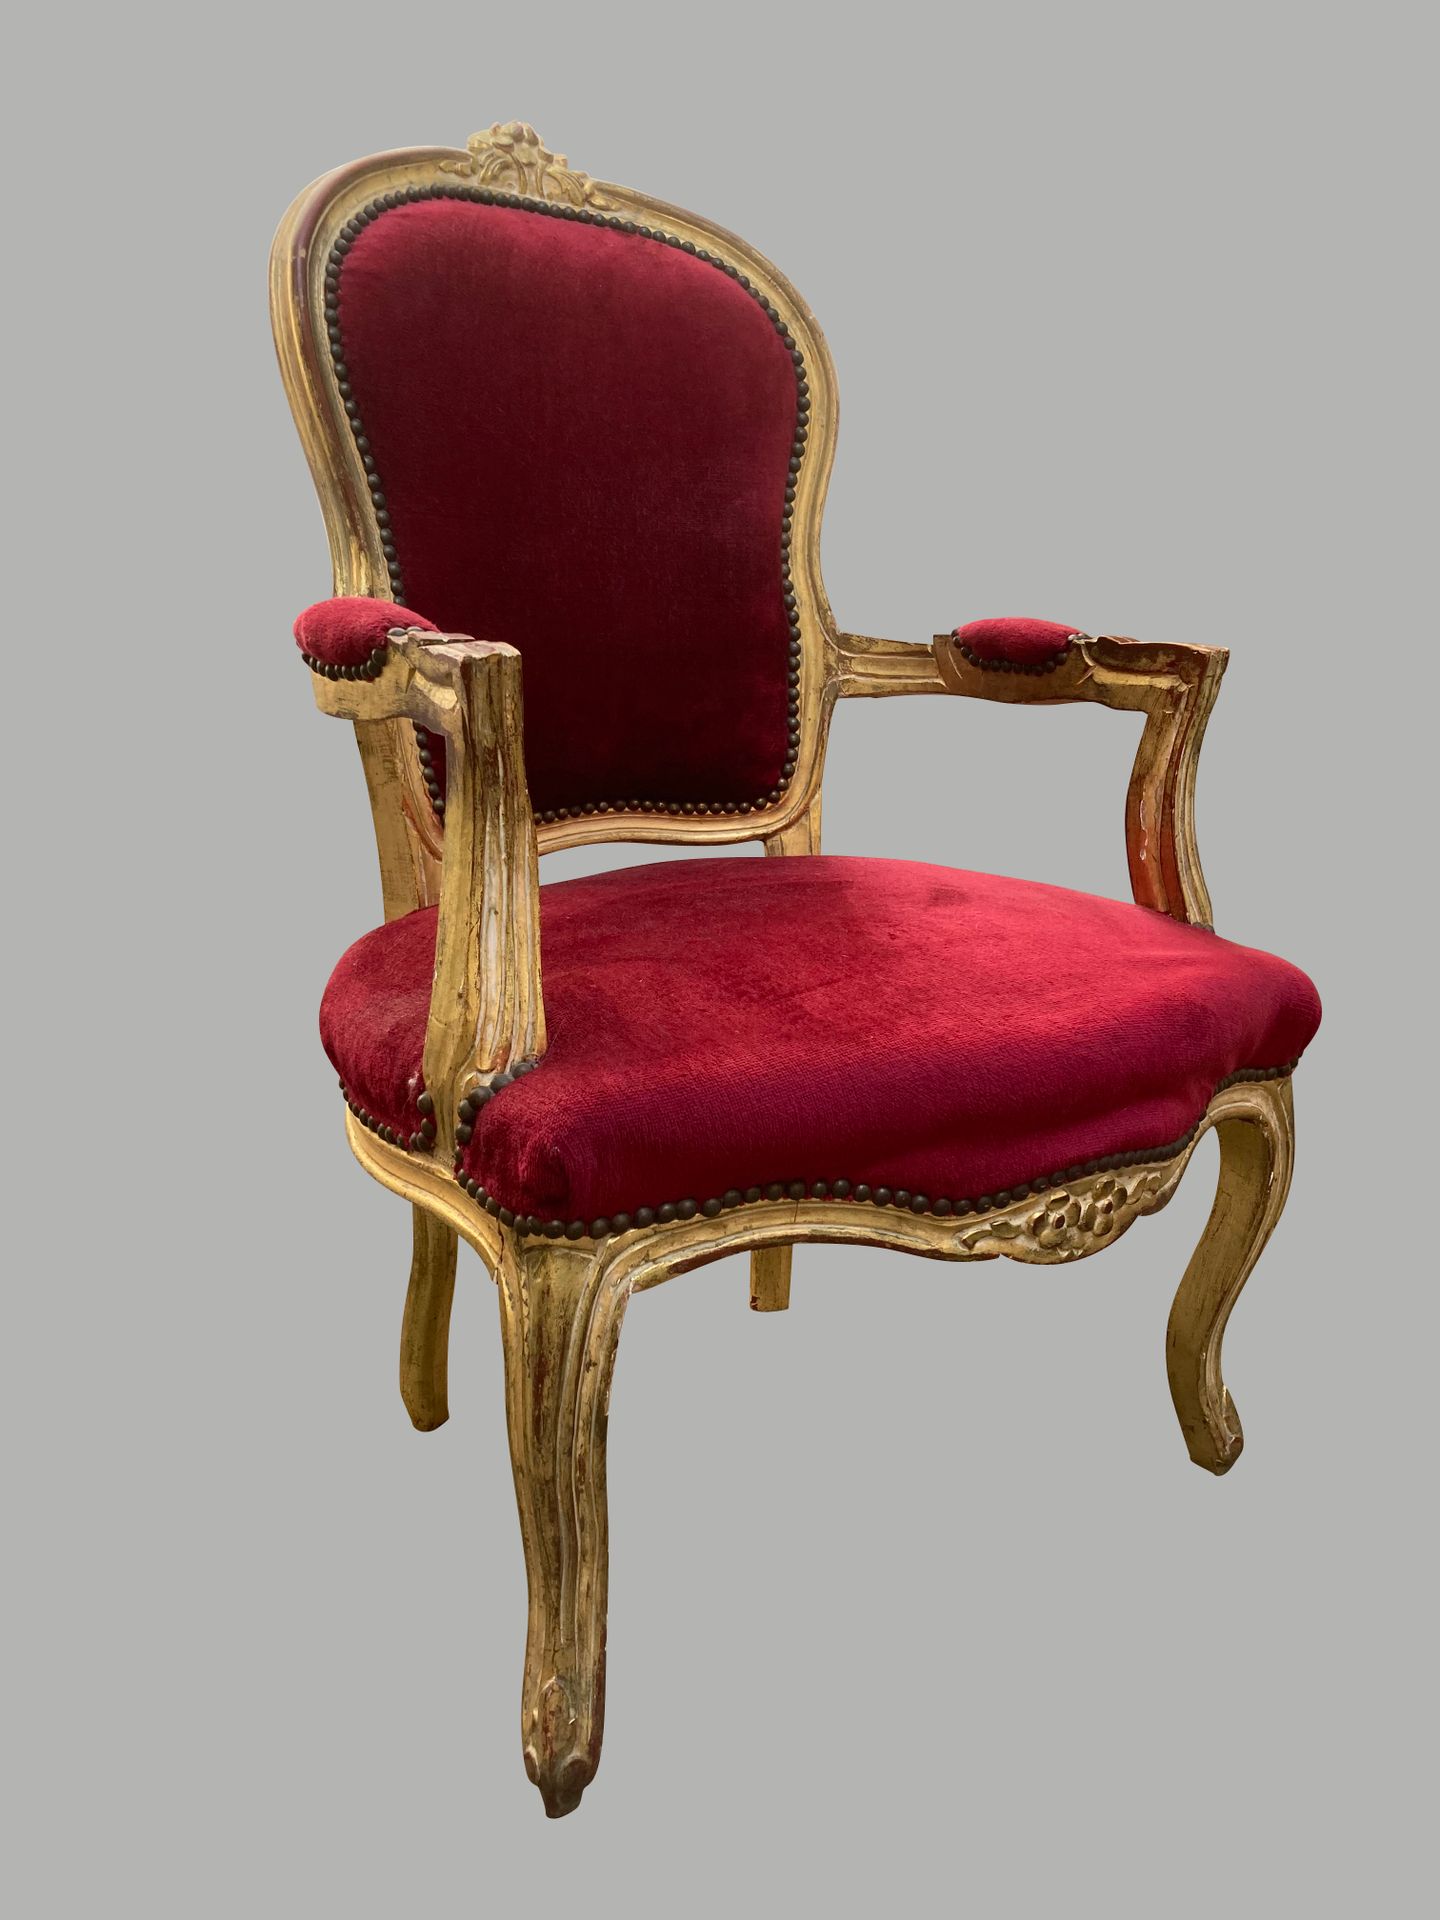 Null 雕刻和镀金的木制卡布里埃扶手椅，奖章式靠背，弧形腿，红色天鹅绒软垫。路易十五风格。高94厘米，宽62厘米，深66厘米。